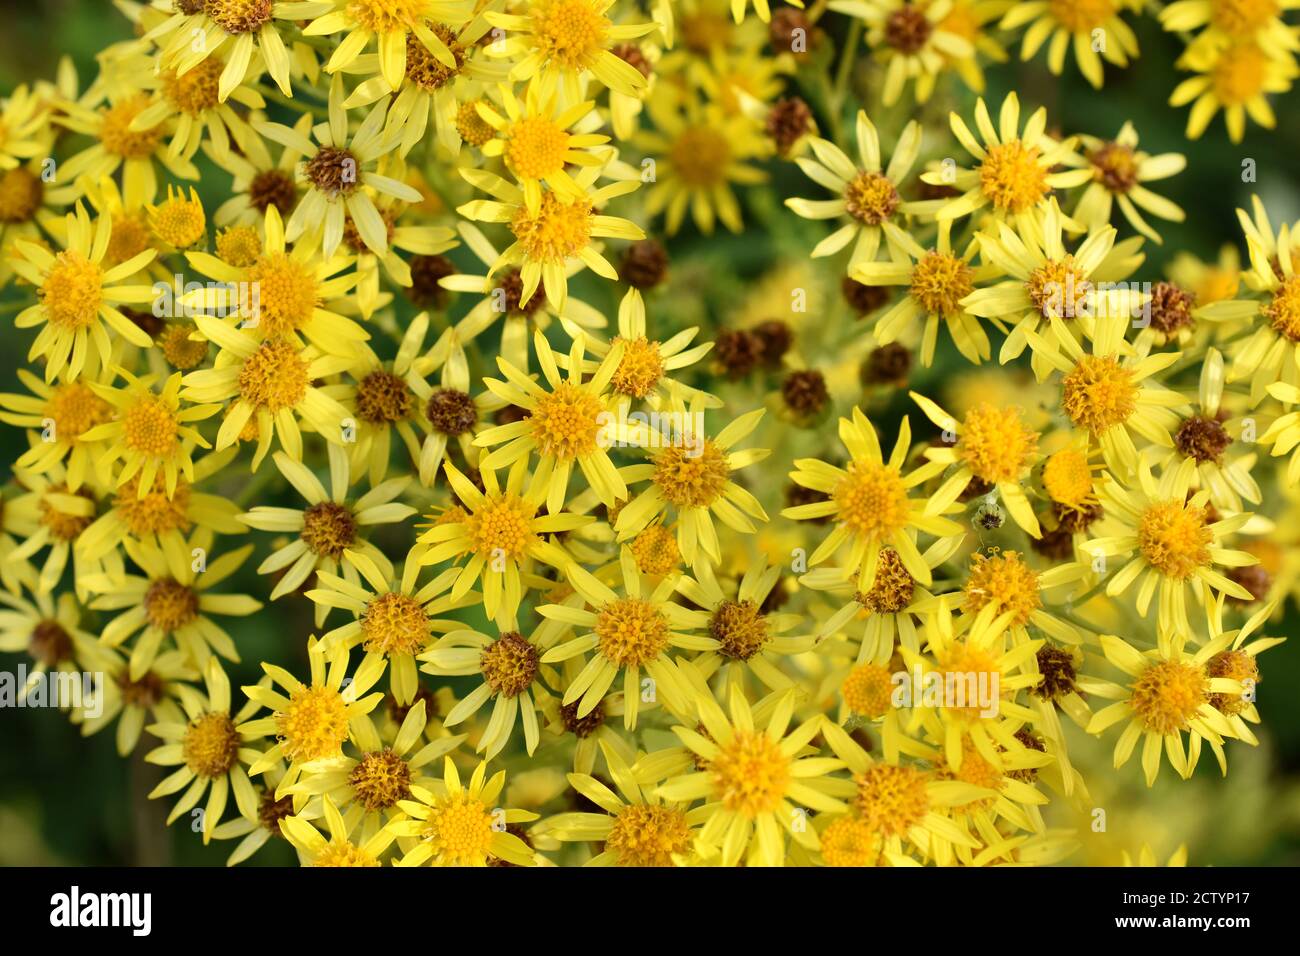 La planta de la hierba invasora venenosa ragwort floreciendo con las flores amarillas Foto de stock